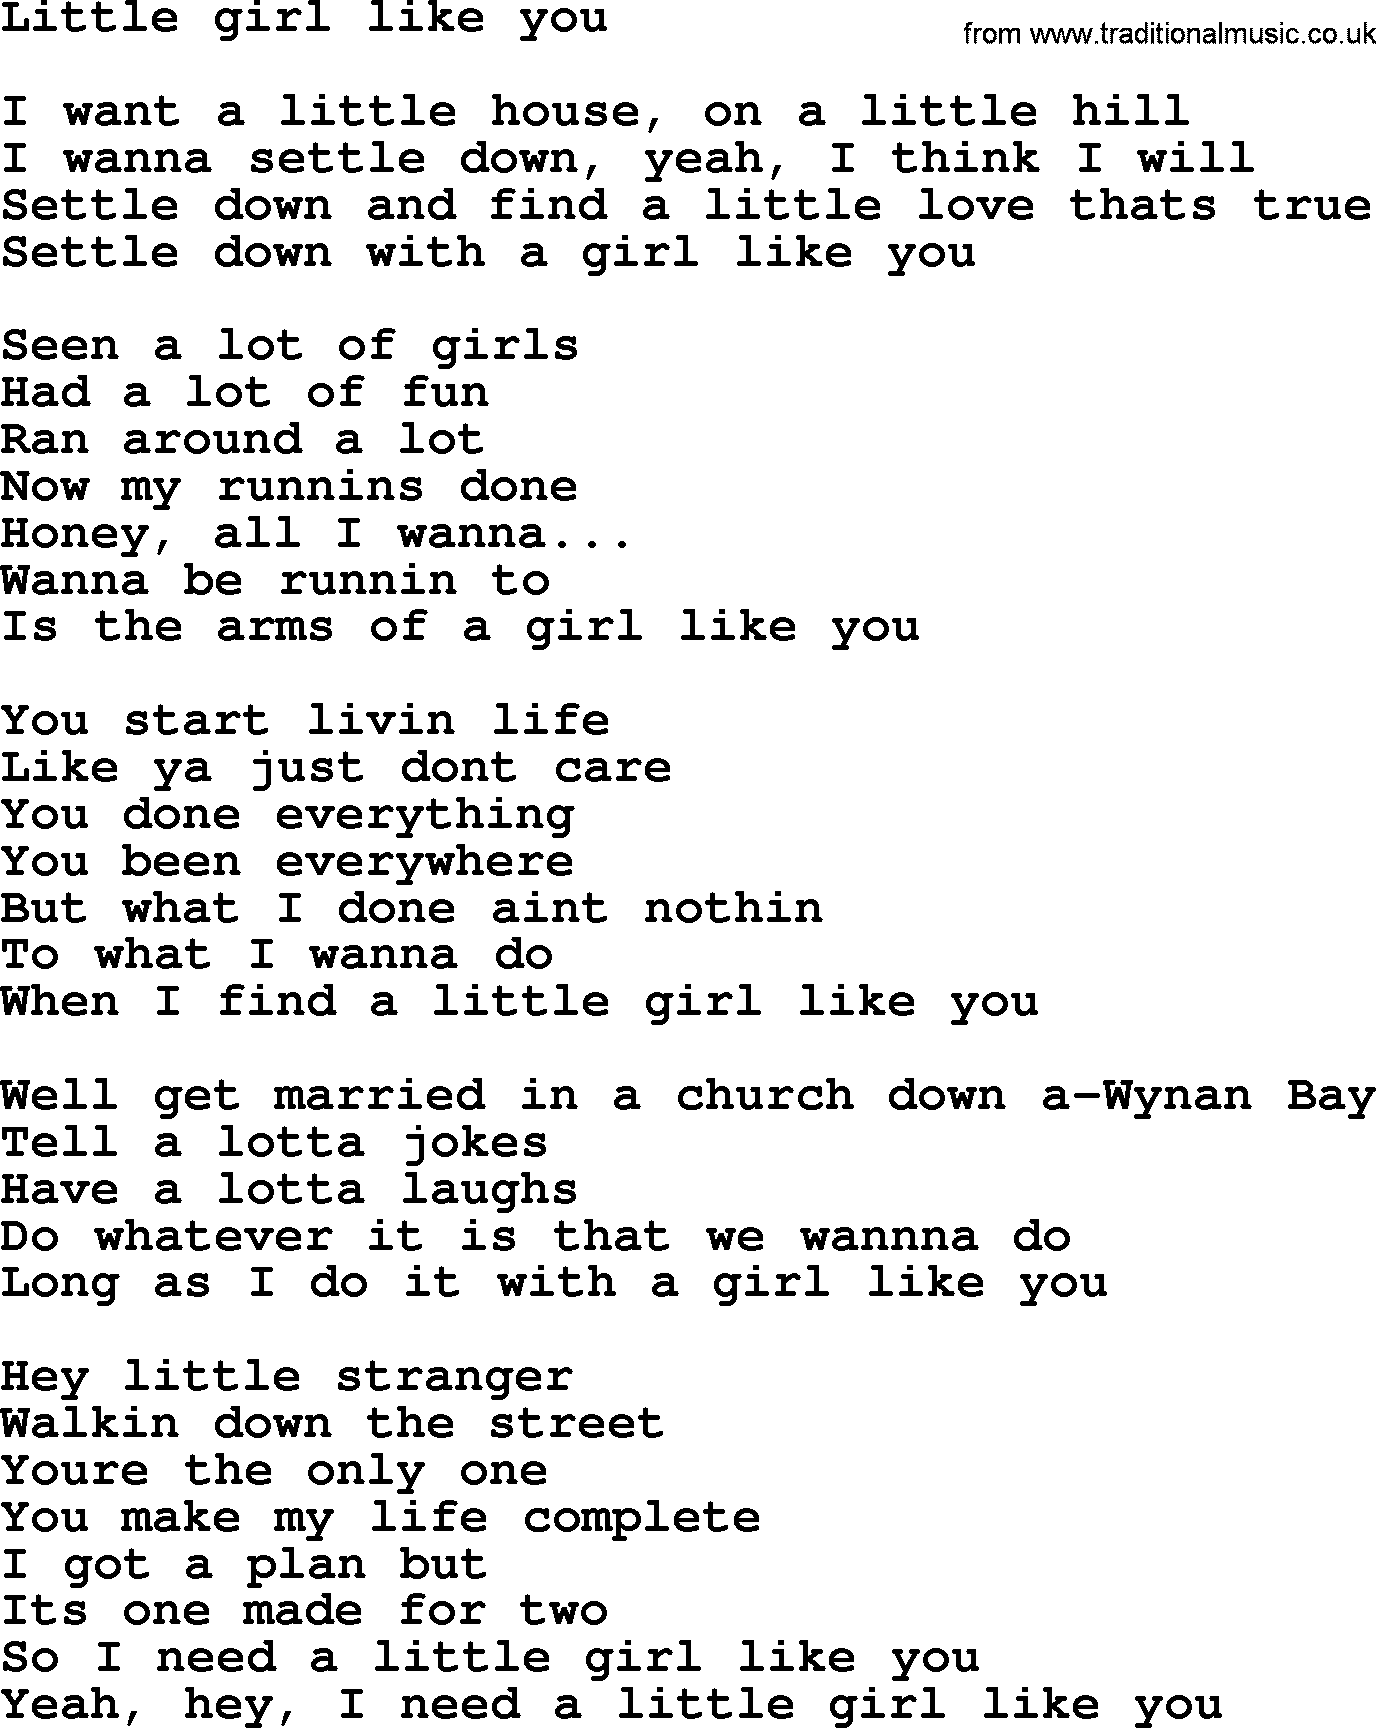 Bruce Springsteen Song Little Girl Like You Lyrics